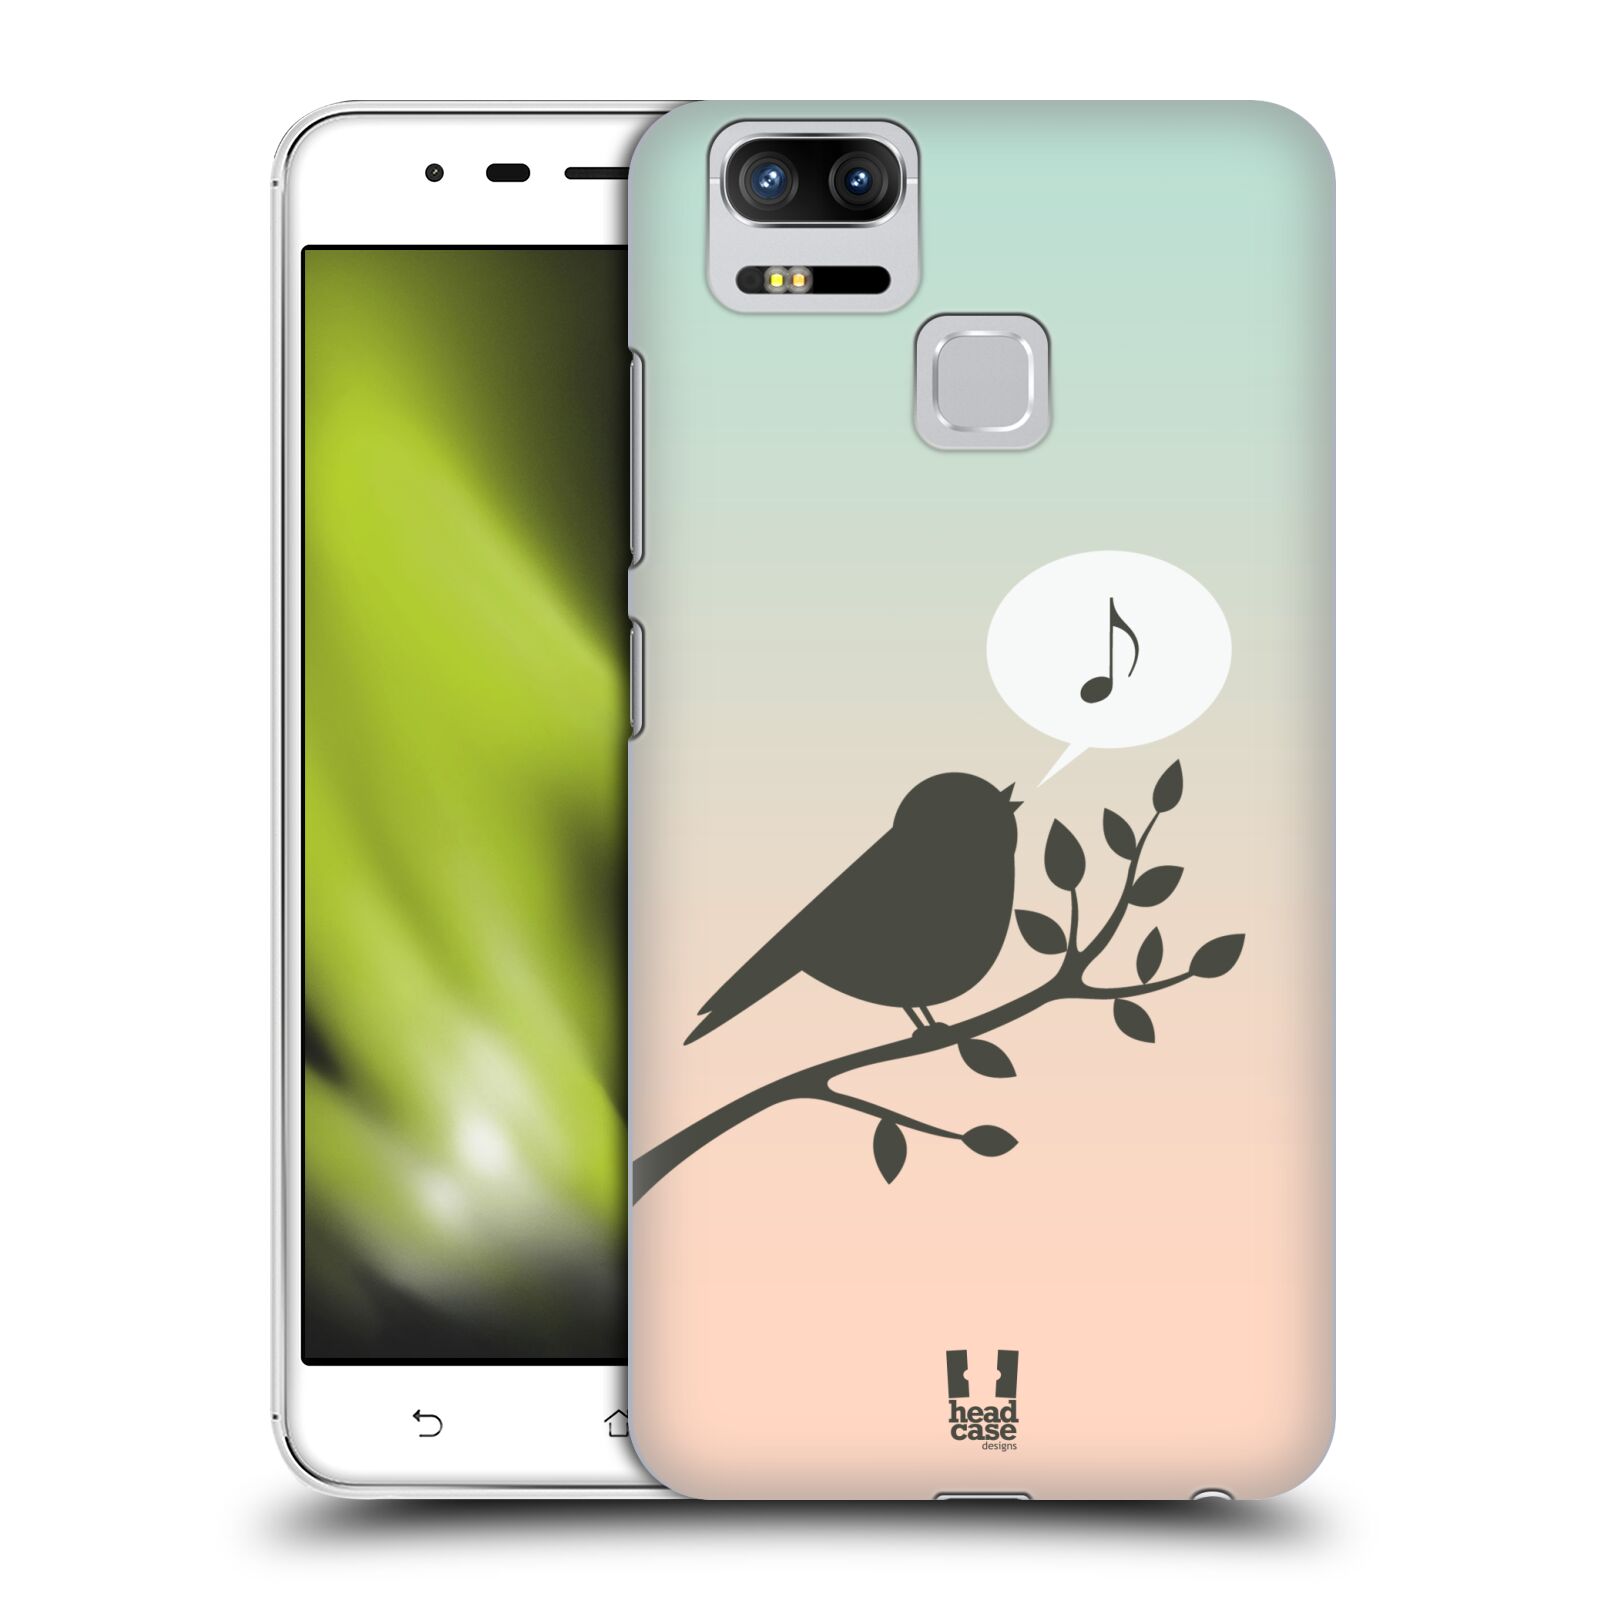 HEAD CASE plastový obal na mobil Asus Zenfone 3 Zoom ZE553KL vzor Ptáček zpěváček noty píseň